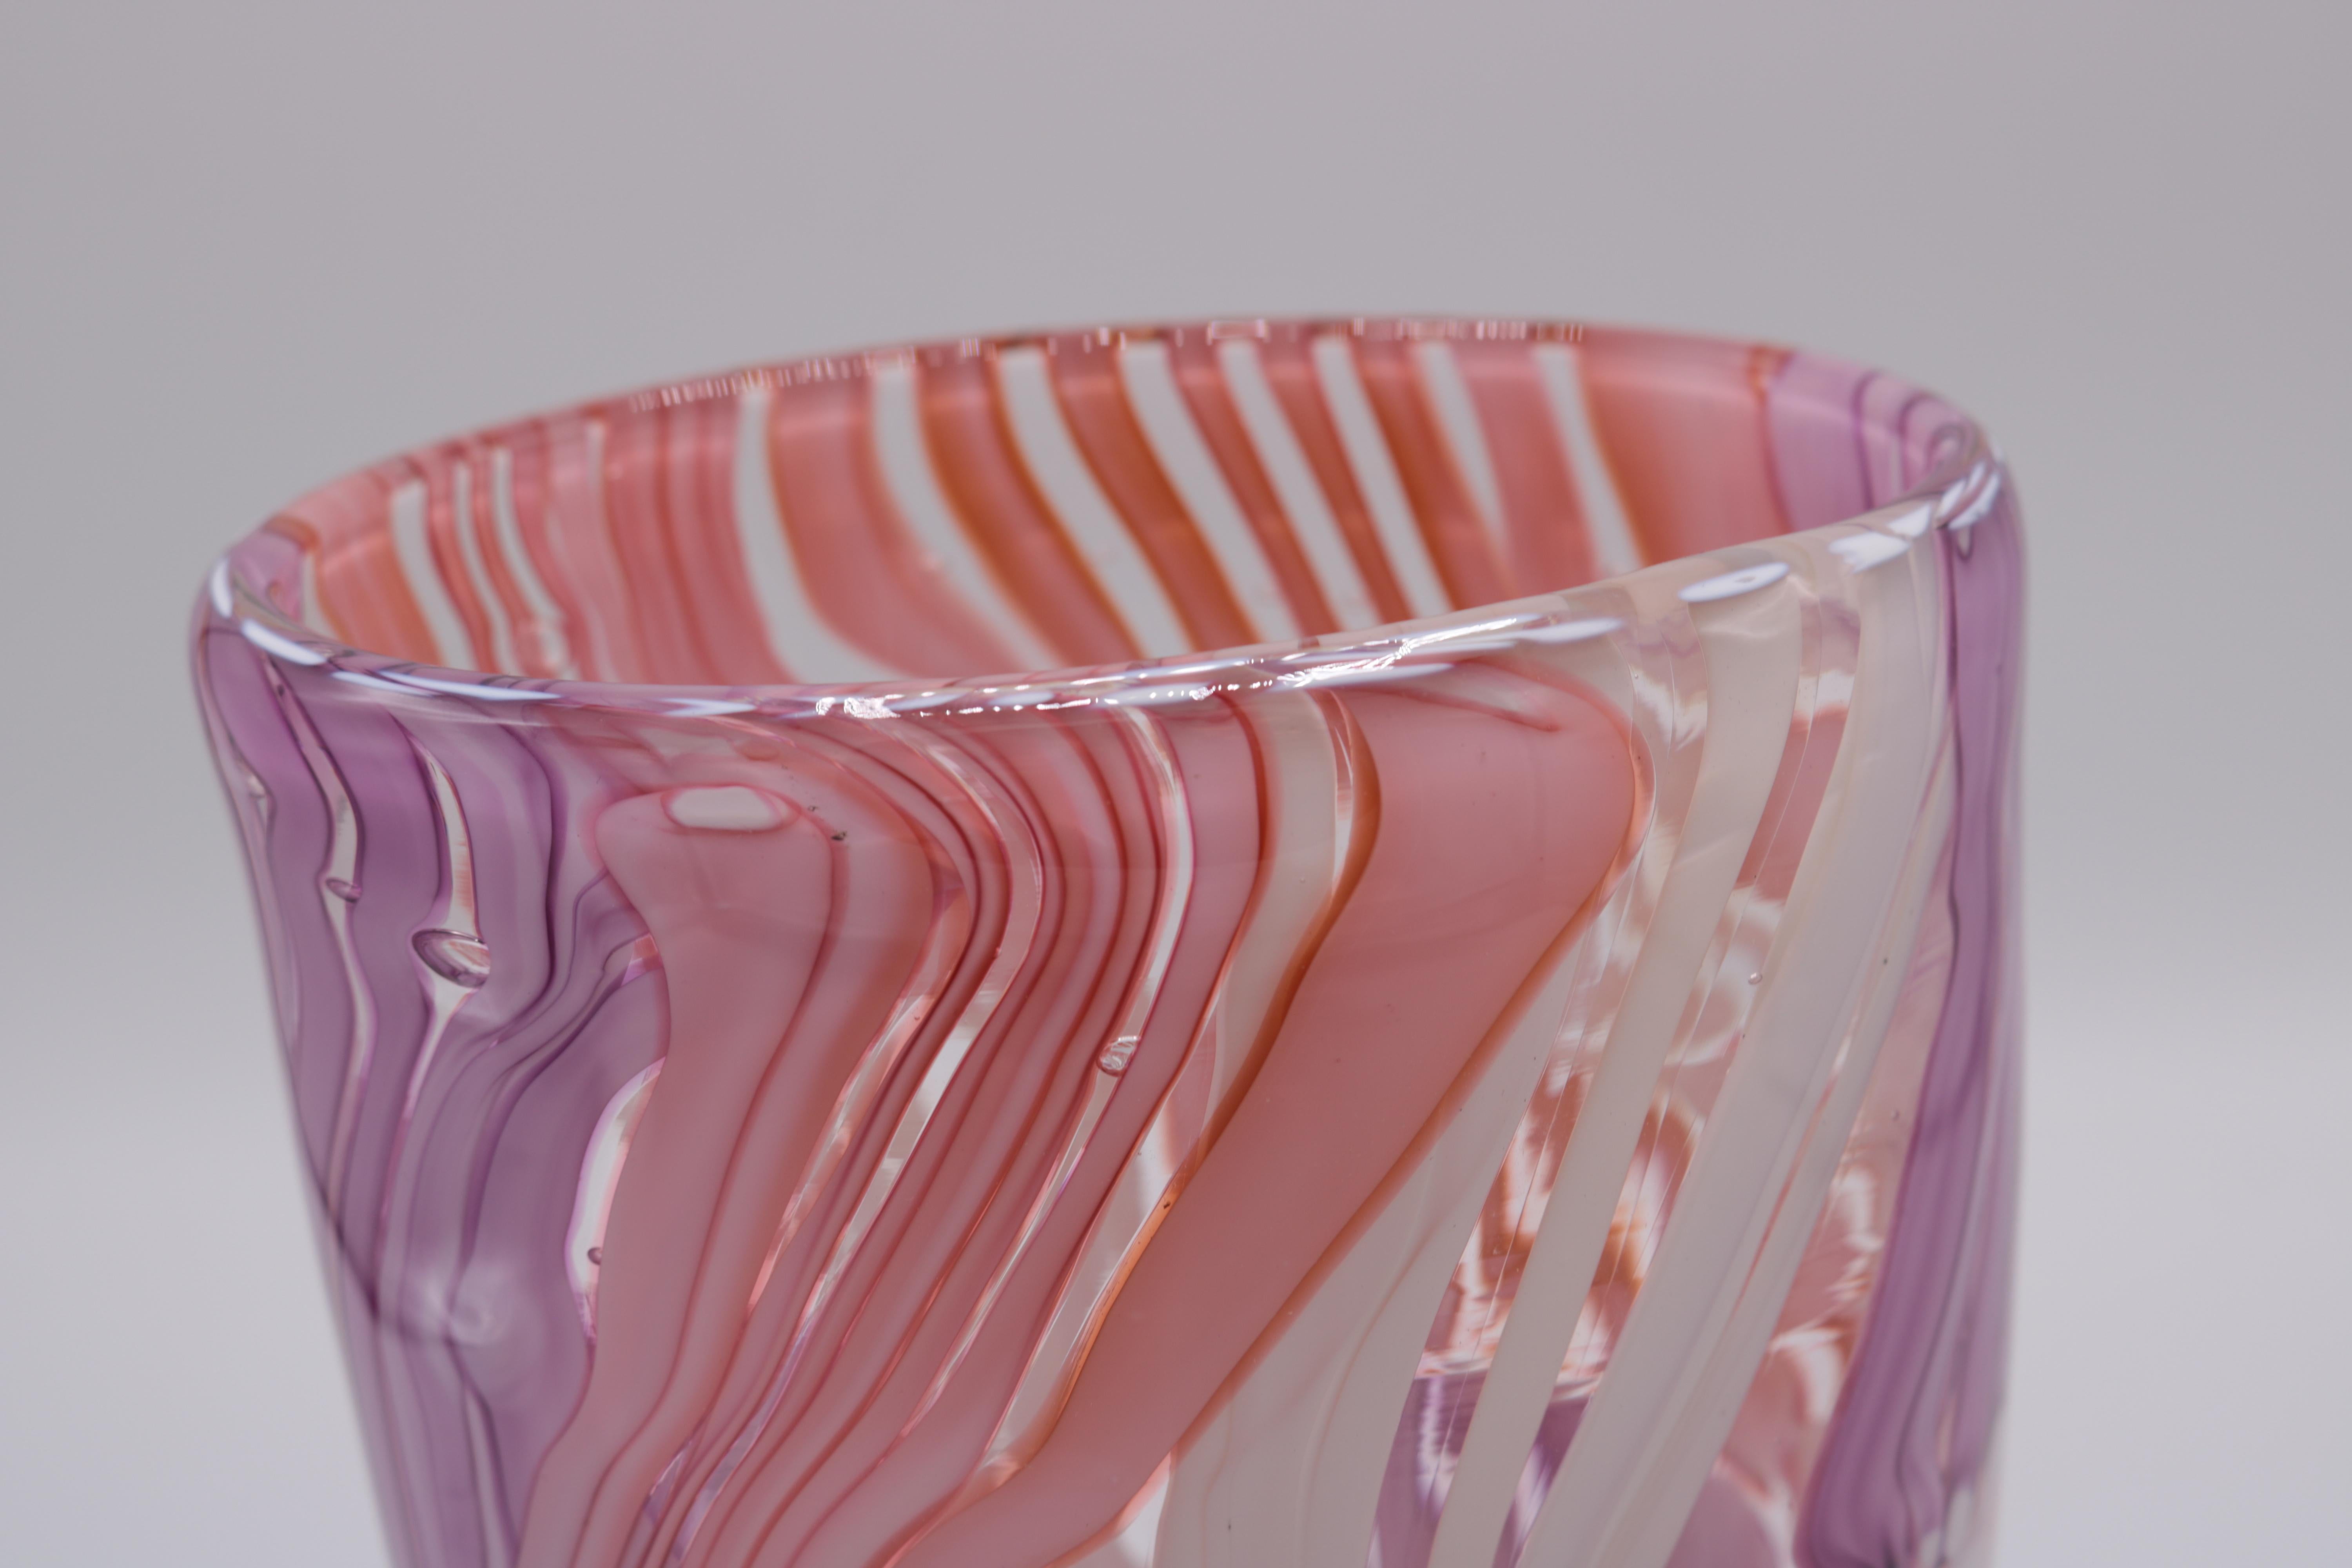 Vase aus Kunstglas von Martin Postch in limitierter Auflage. 
Ovale Form aus klarem Glas mit rosa, weißen und violetten Details. 
Geätzte Signatur auf der Unterseite.